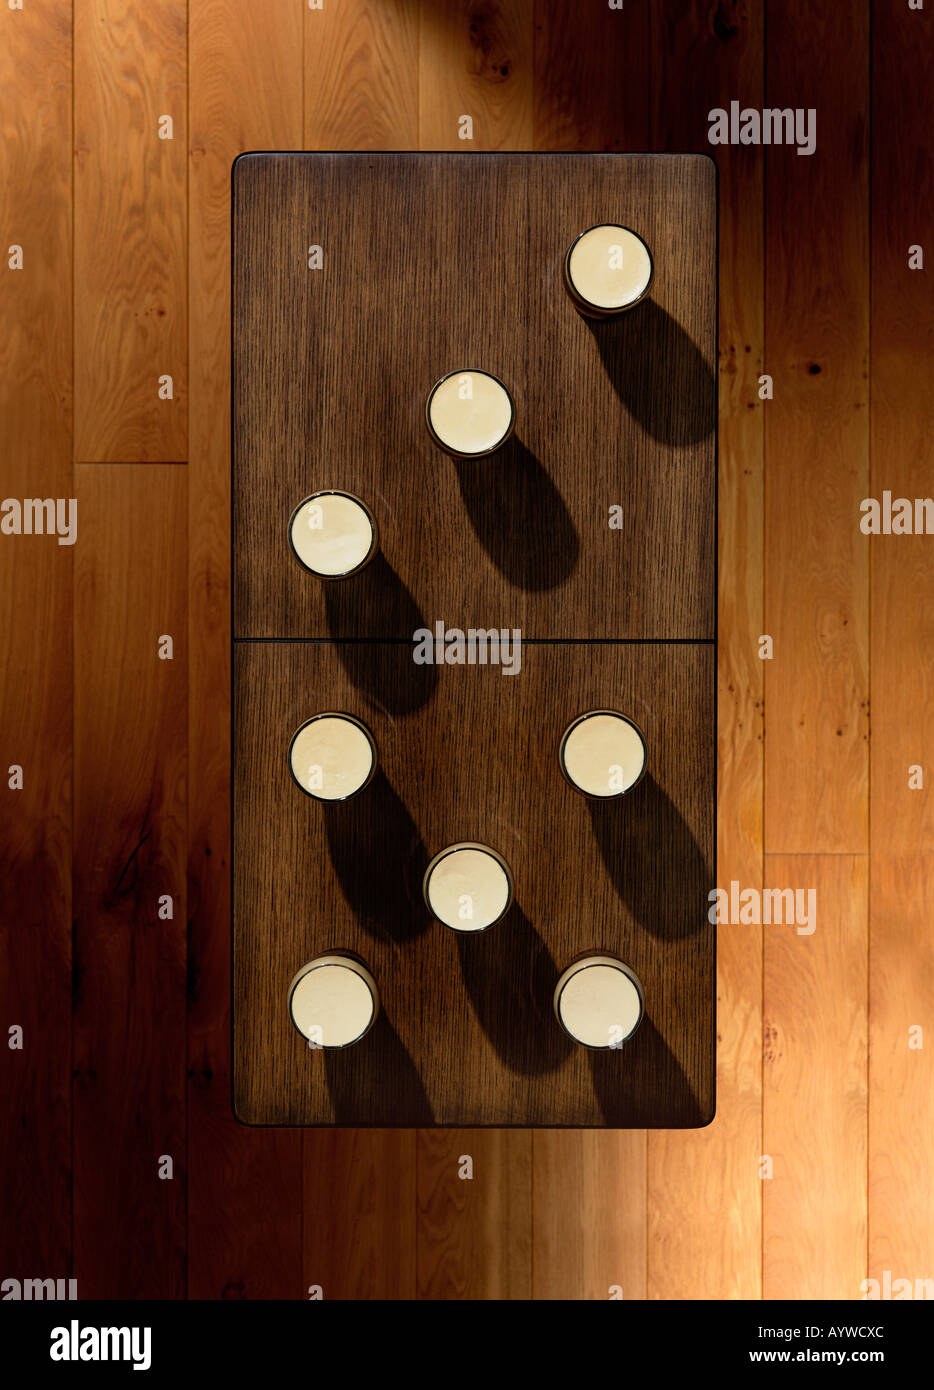 Un overhead shot di una tabella con alcune pinte di posto su di esso anche per apparire come un domino Foto Stock